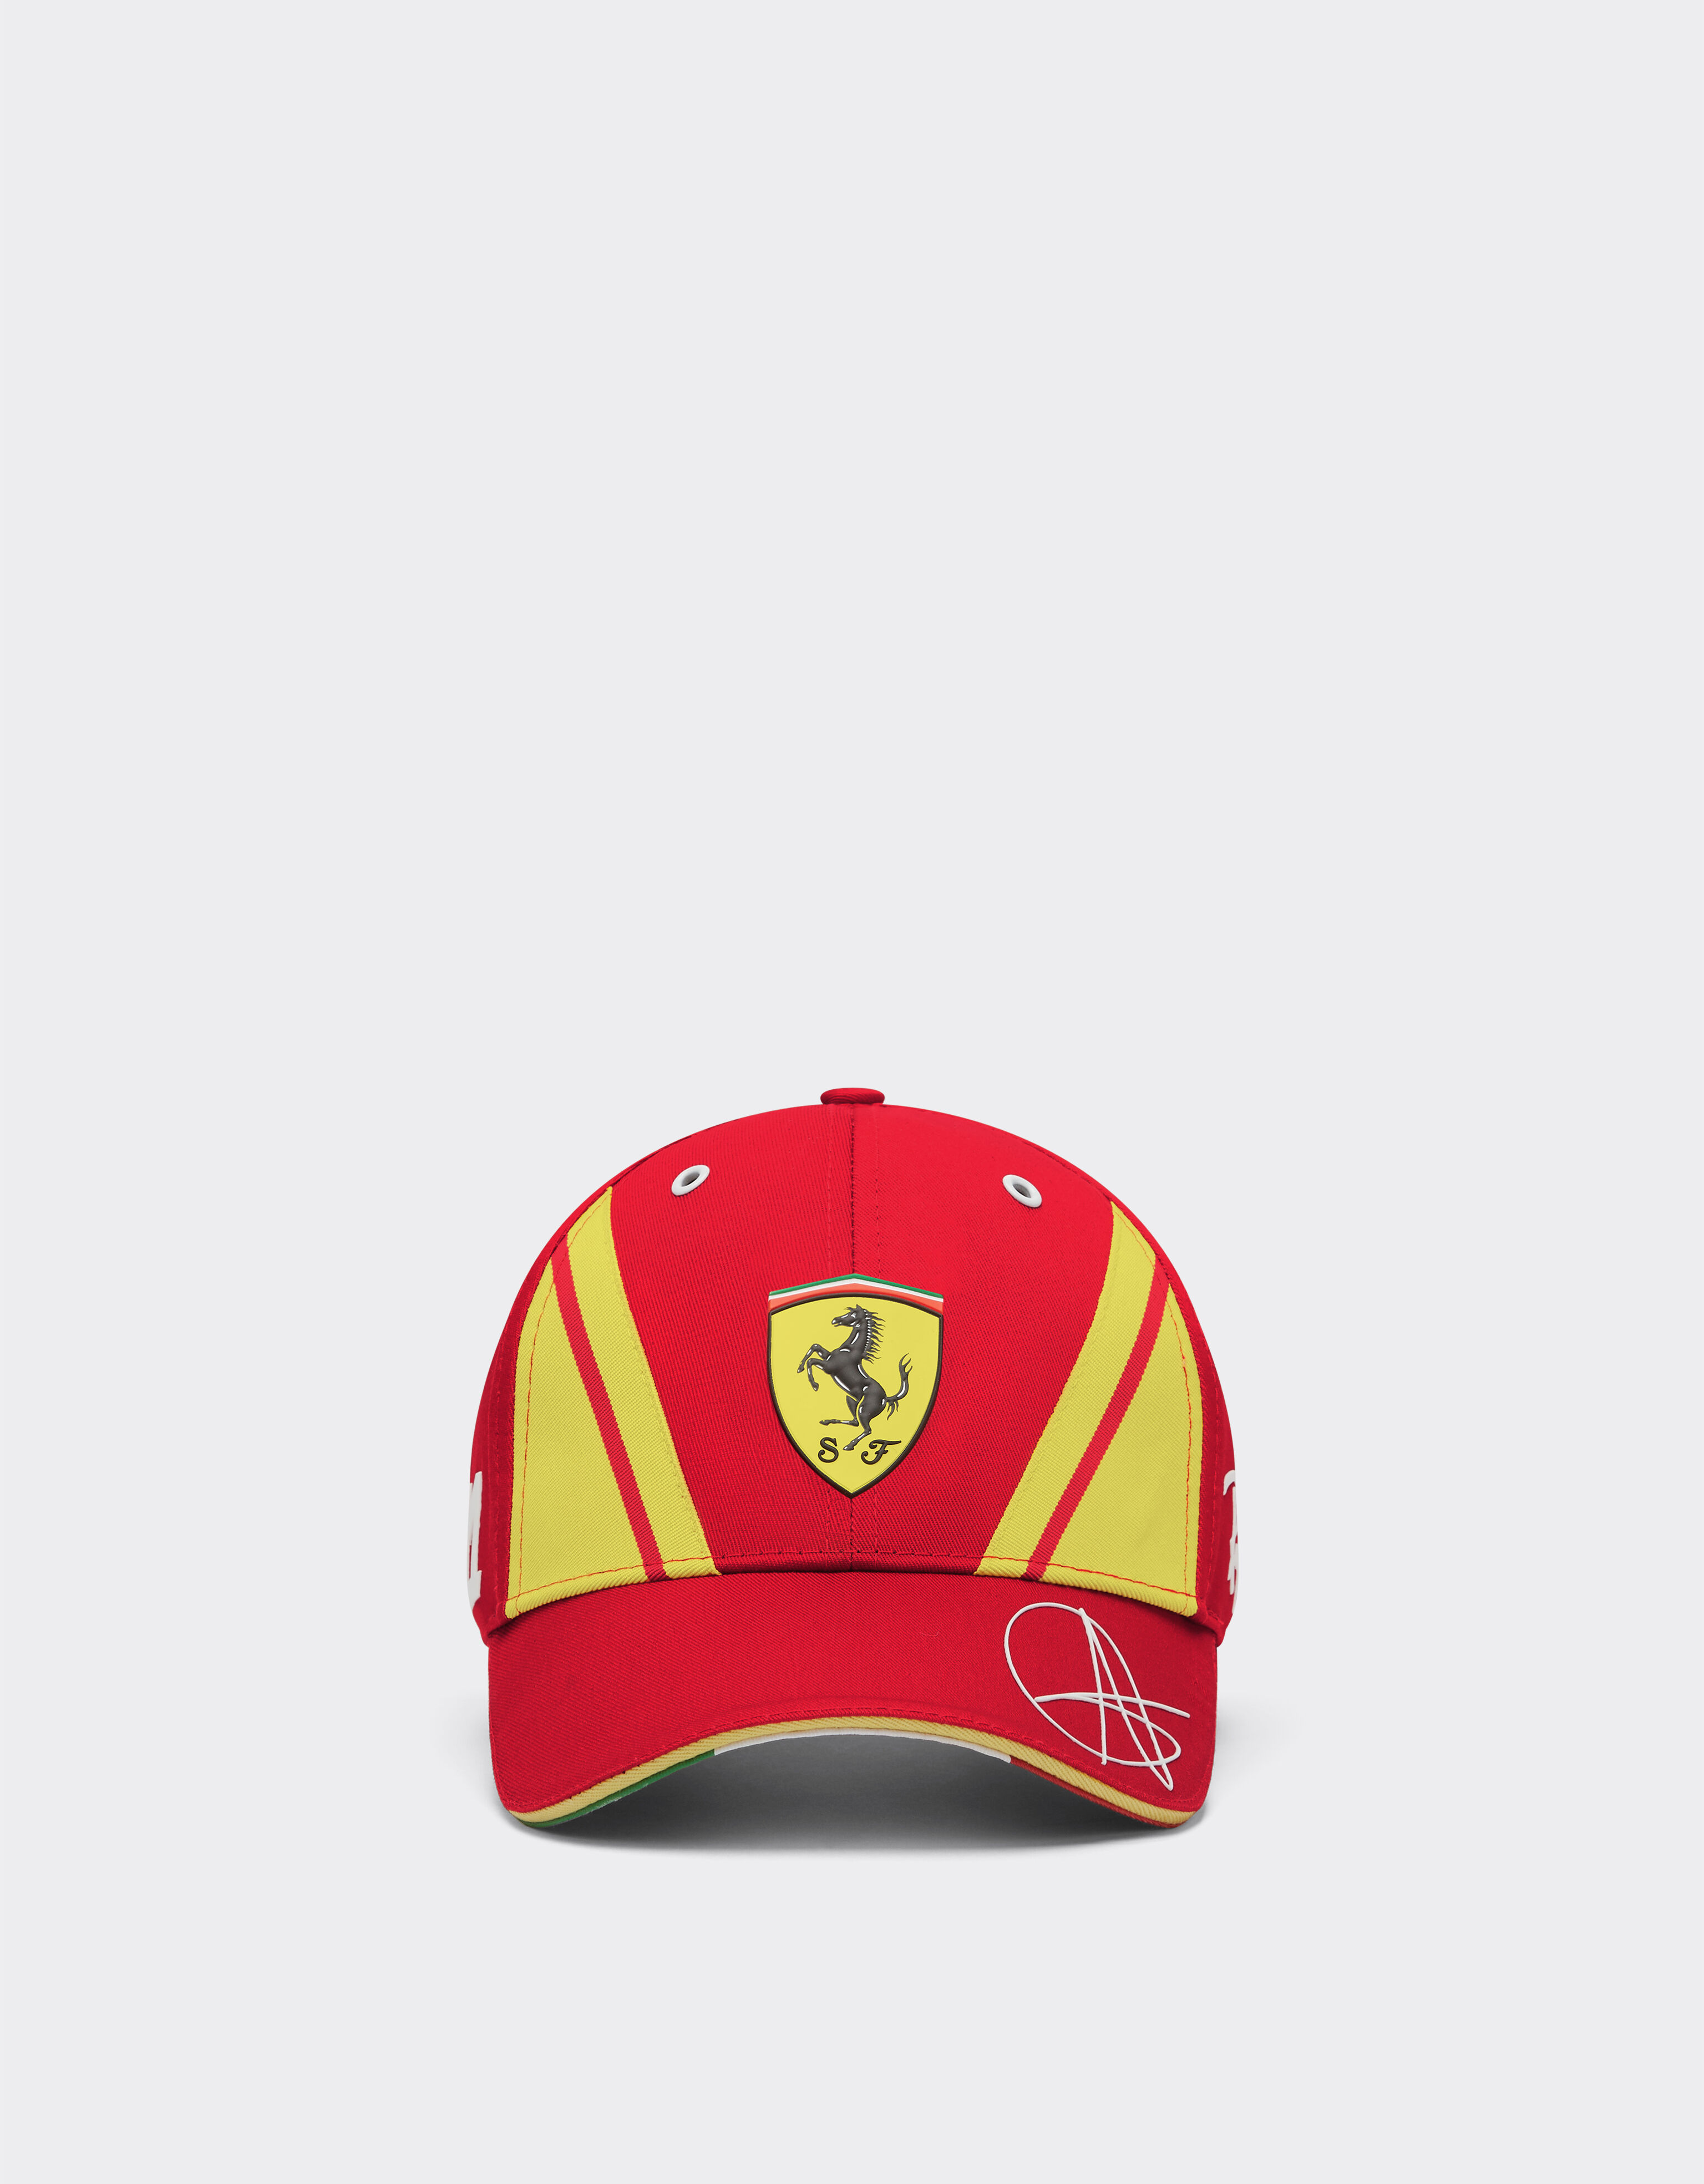 ${brand} Ferrari Hypercar ハット ジョヴィナッツィ - リミテッドエディション ${colorDescription} ${masterID}